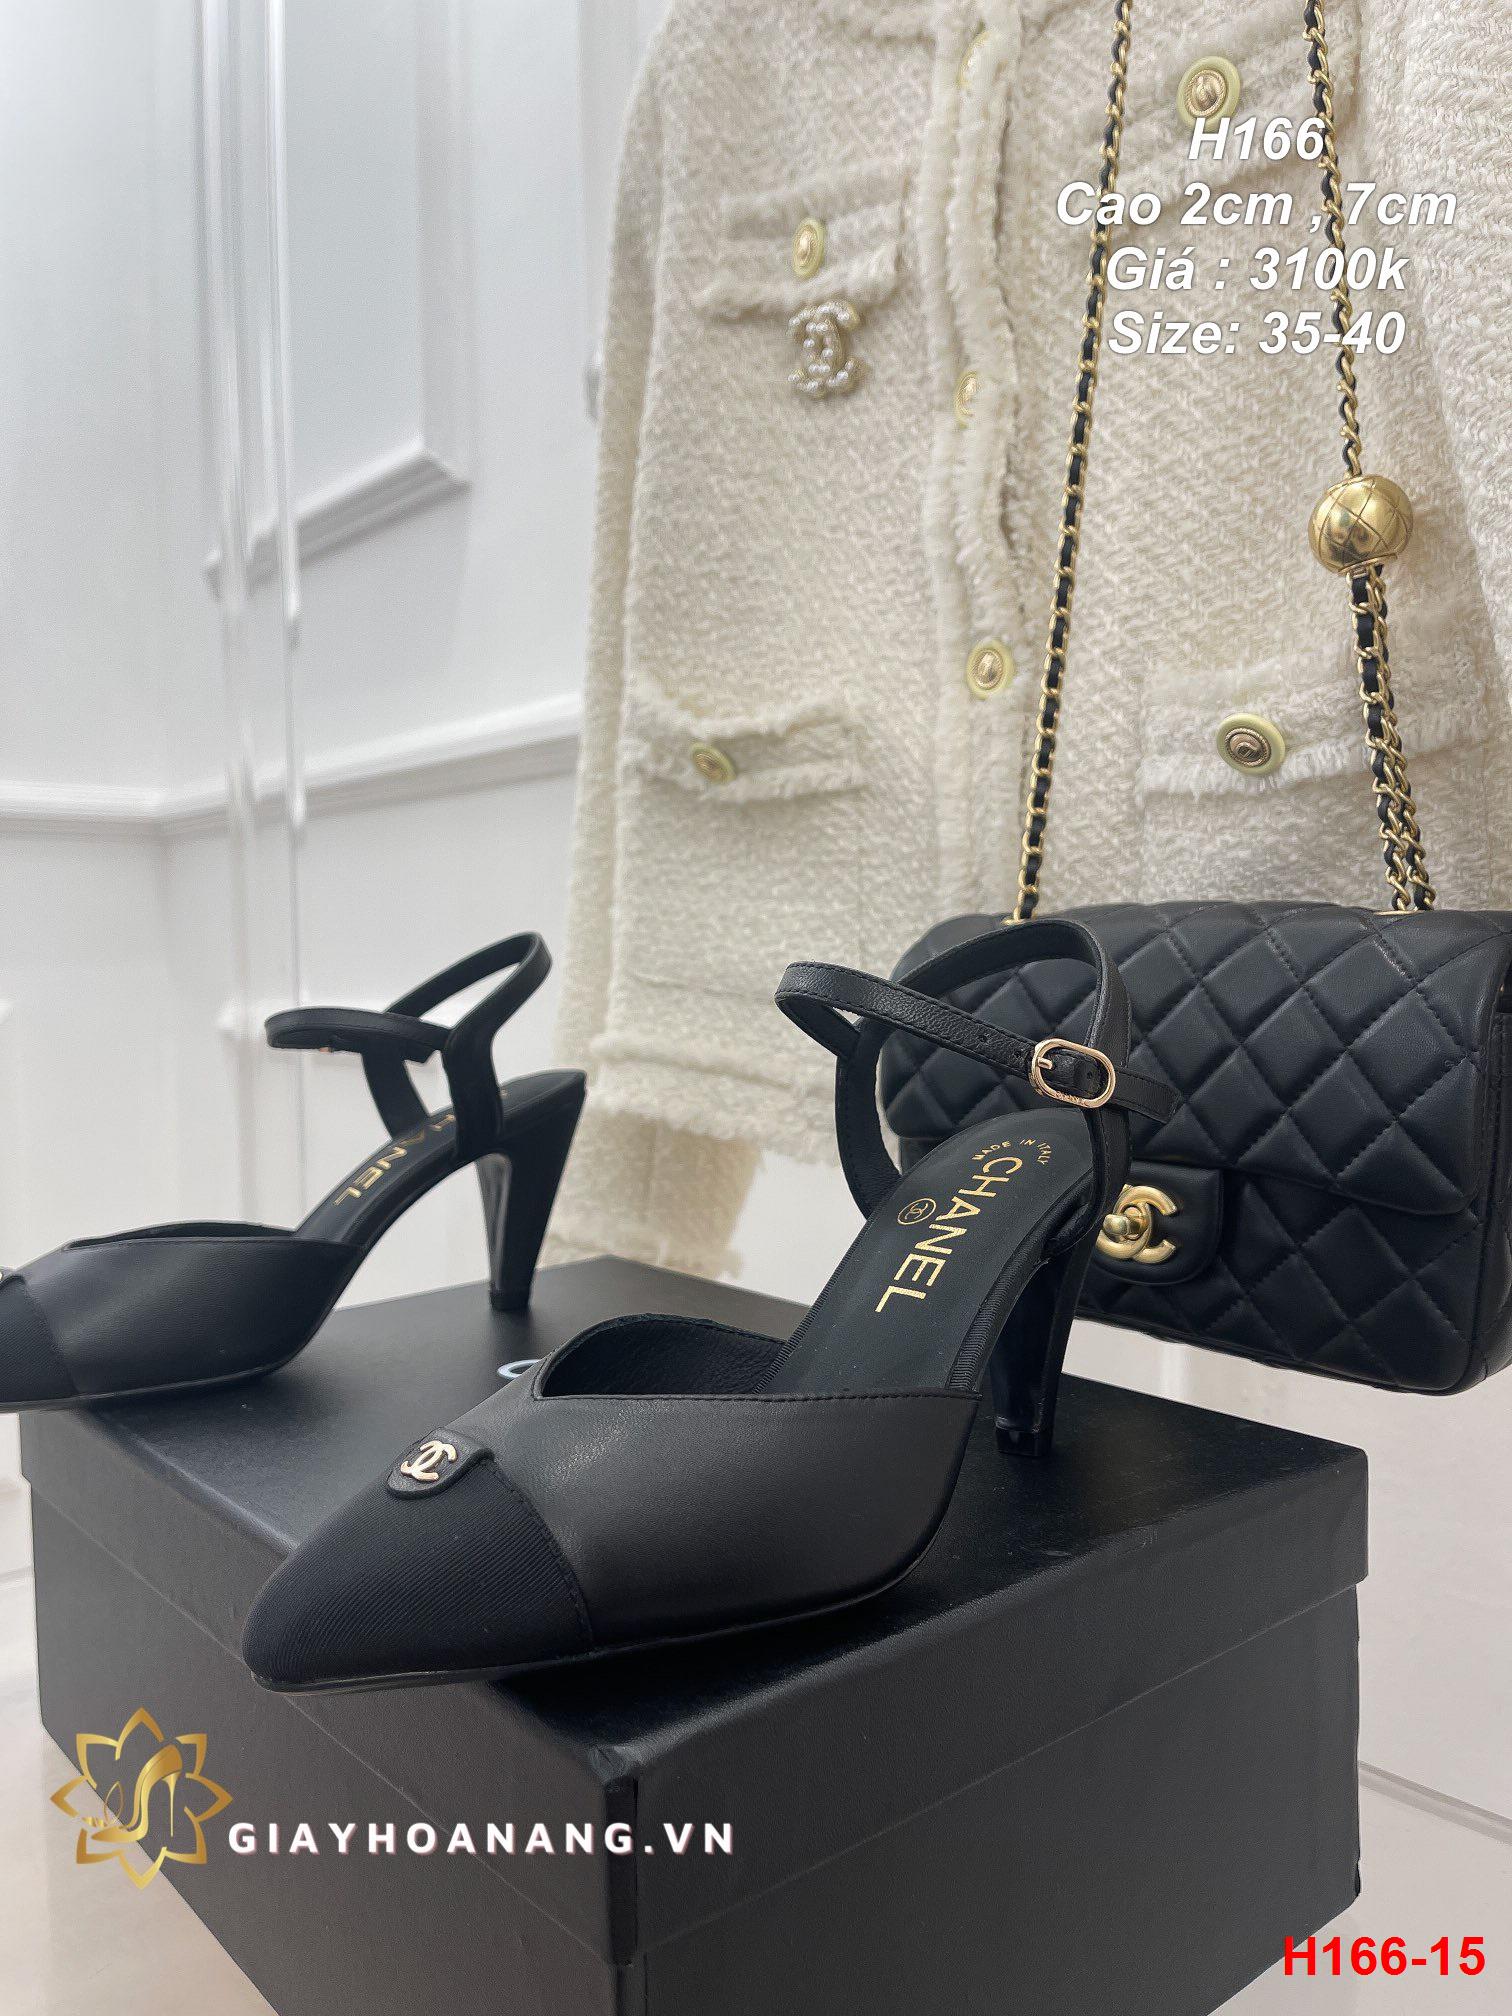 H166-15 Chanel sandal cao 2cm , 7cm siêu cấp